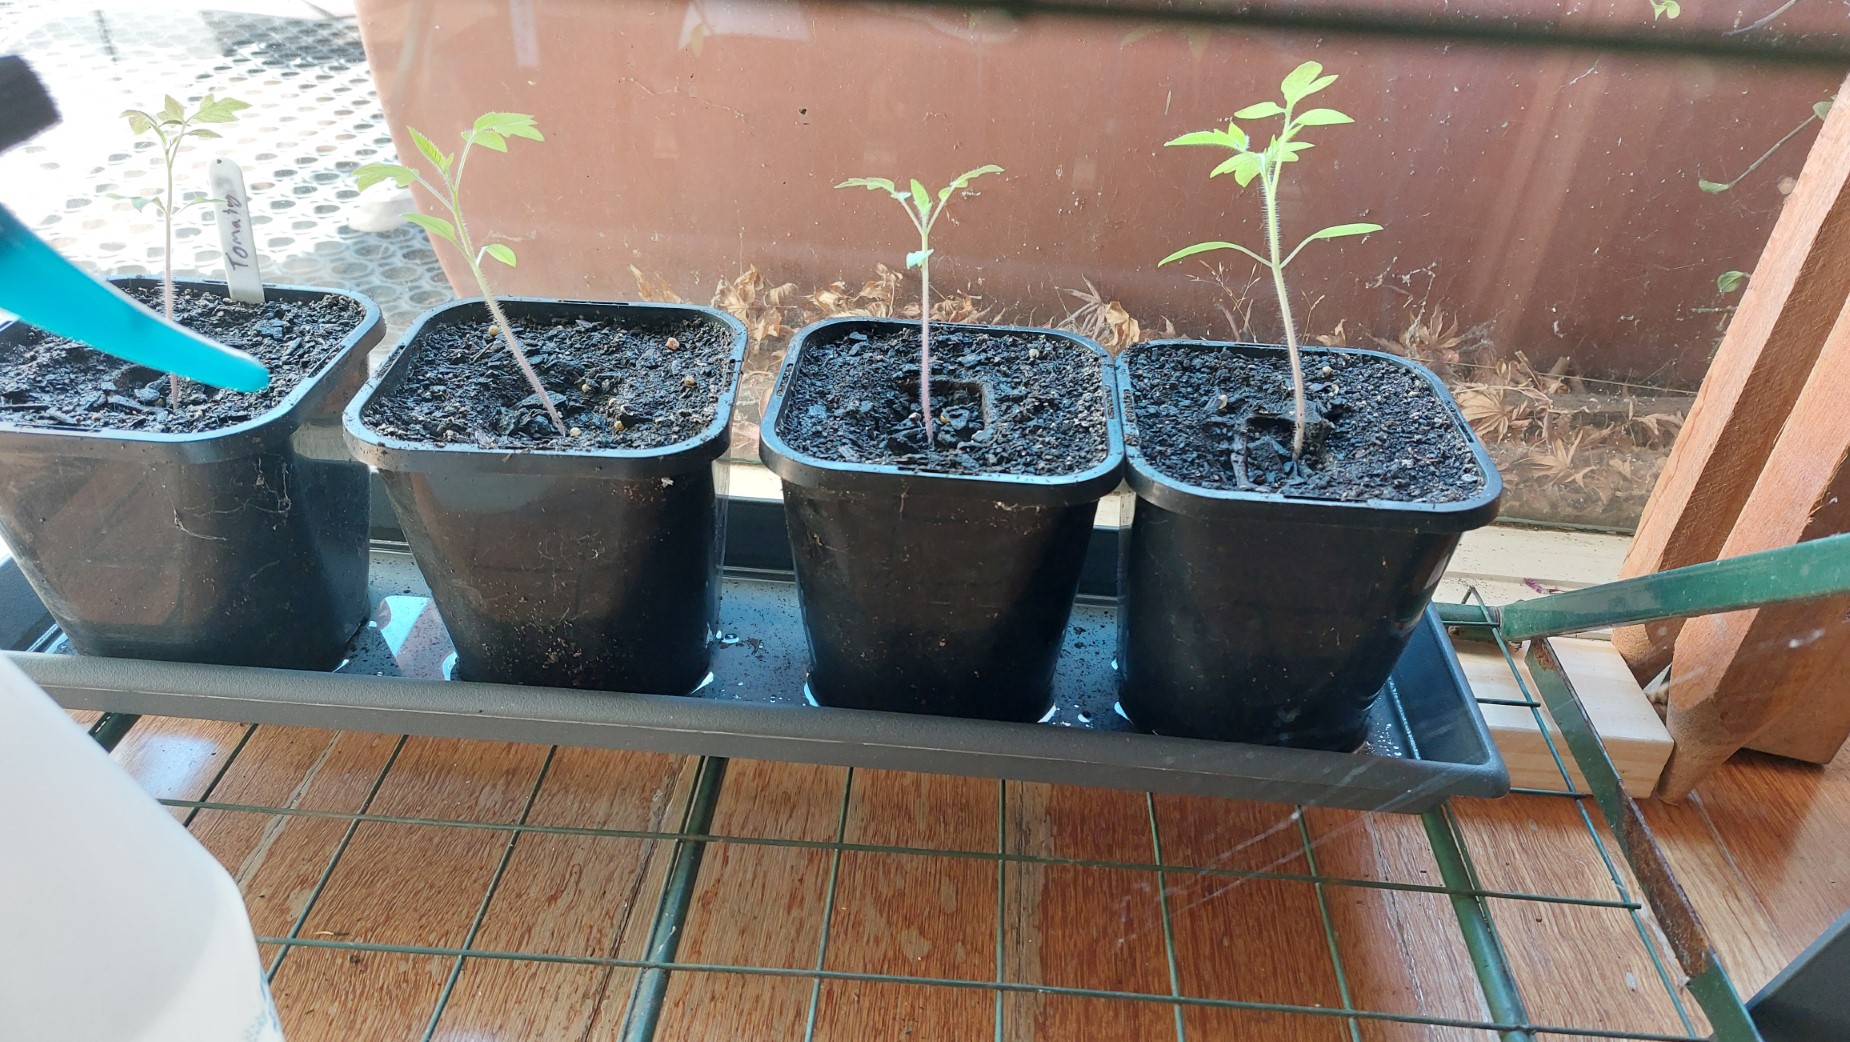 Seedlings on the bottom shelf